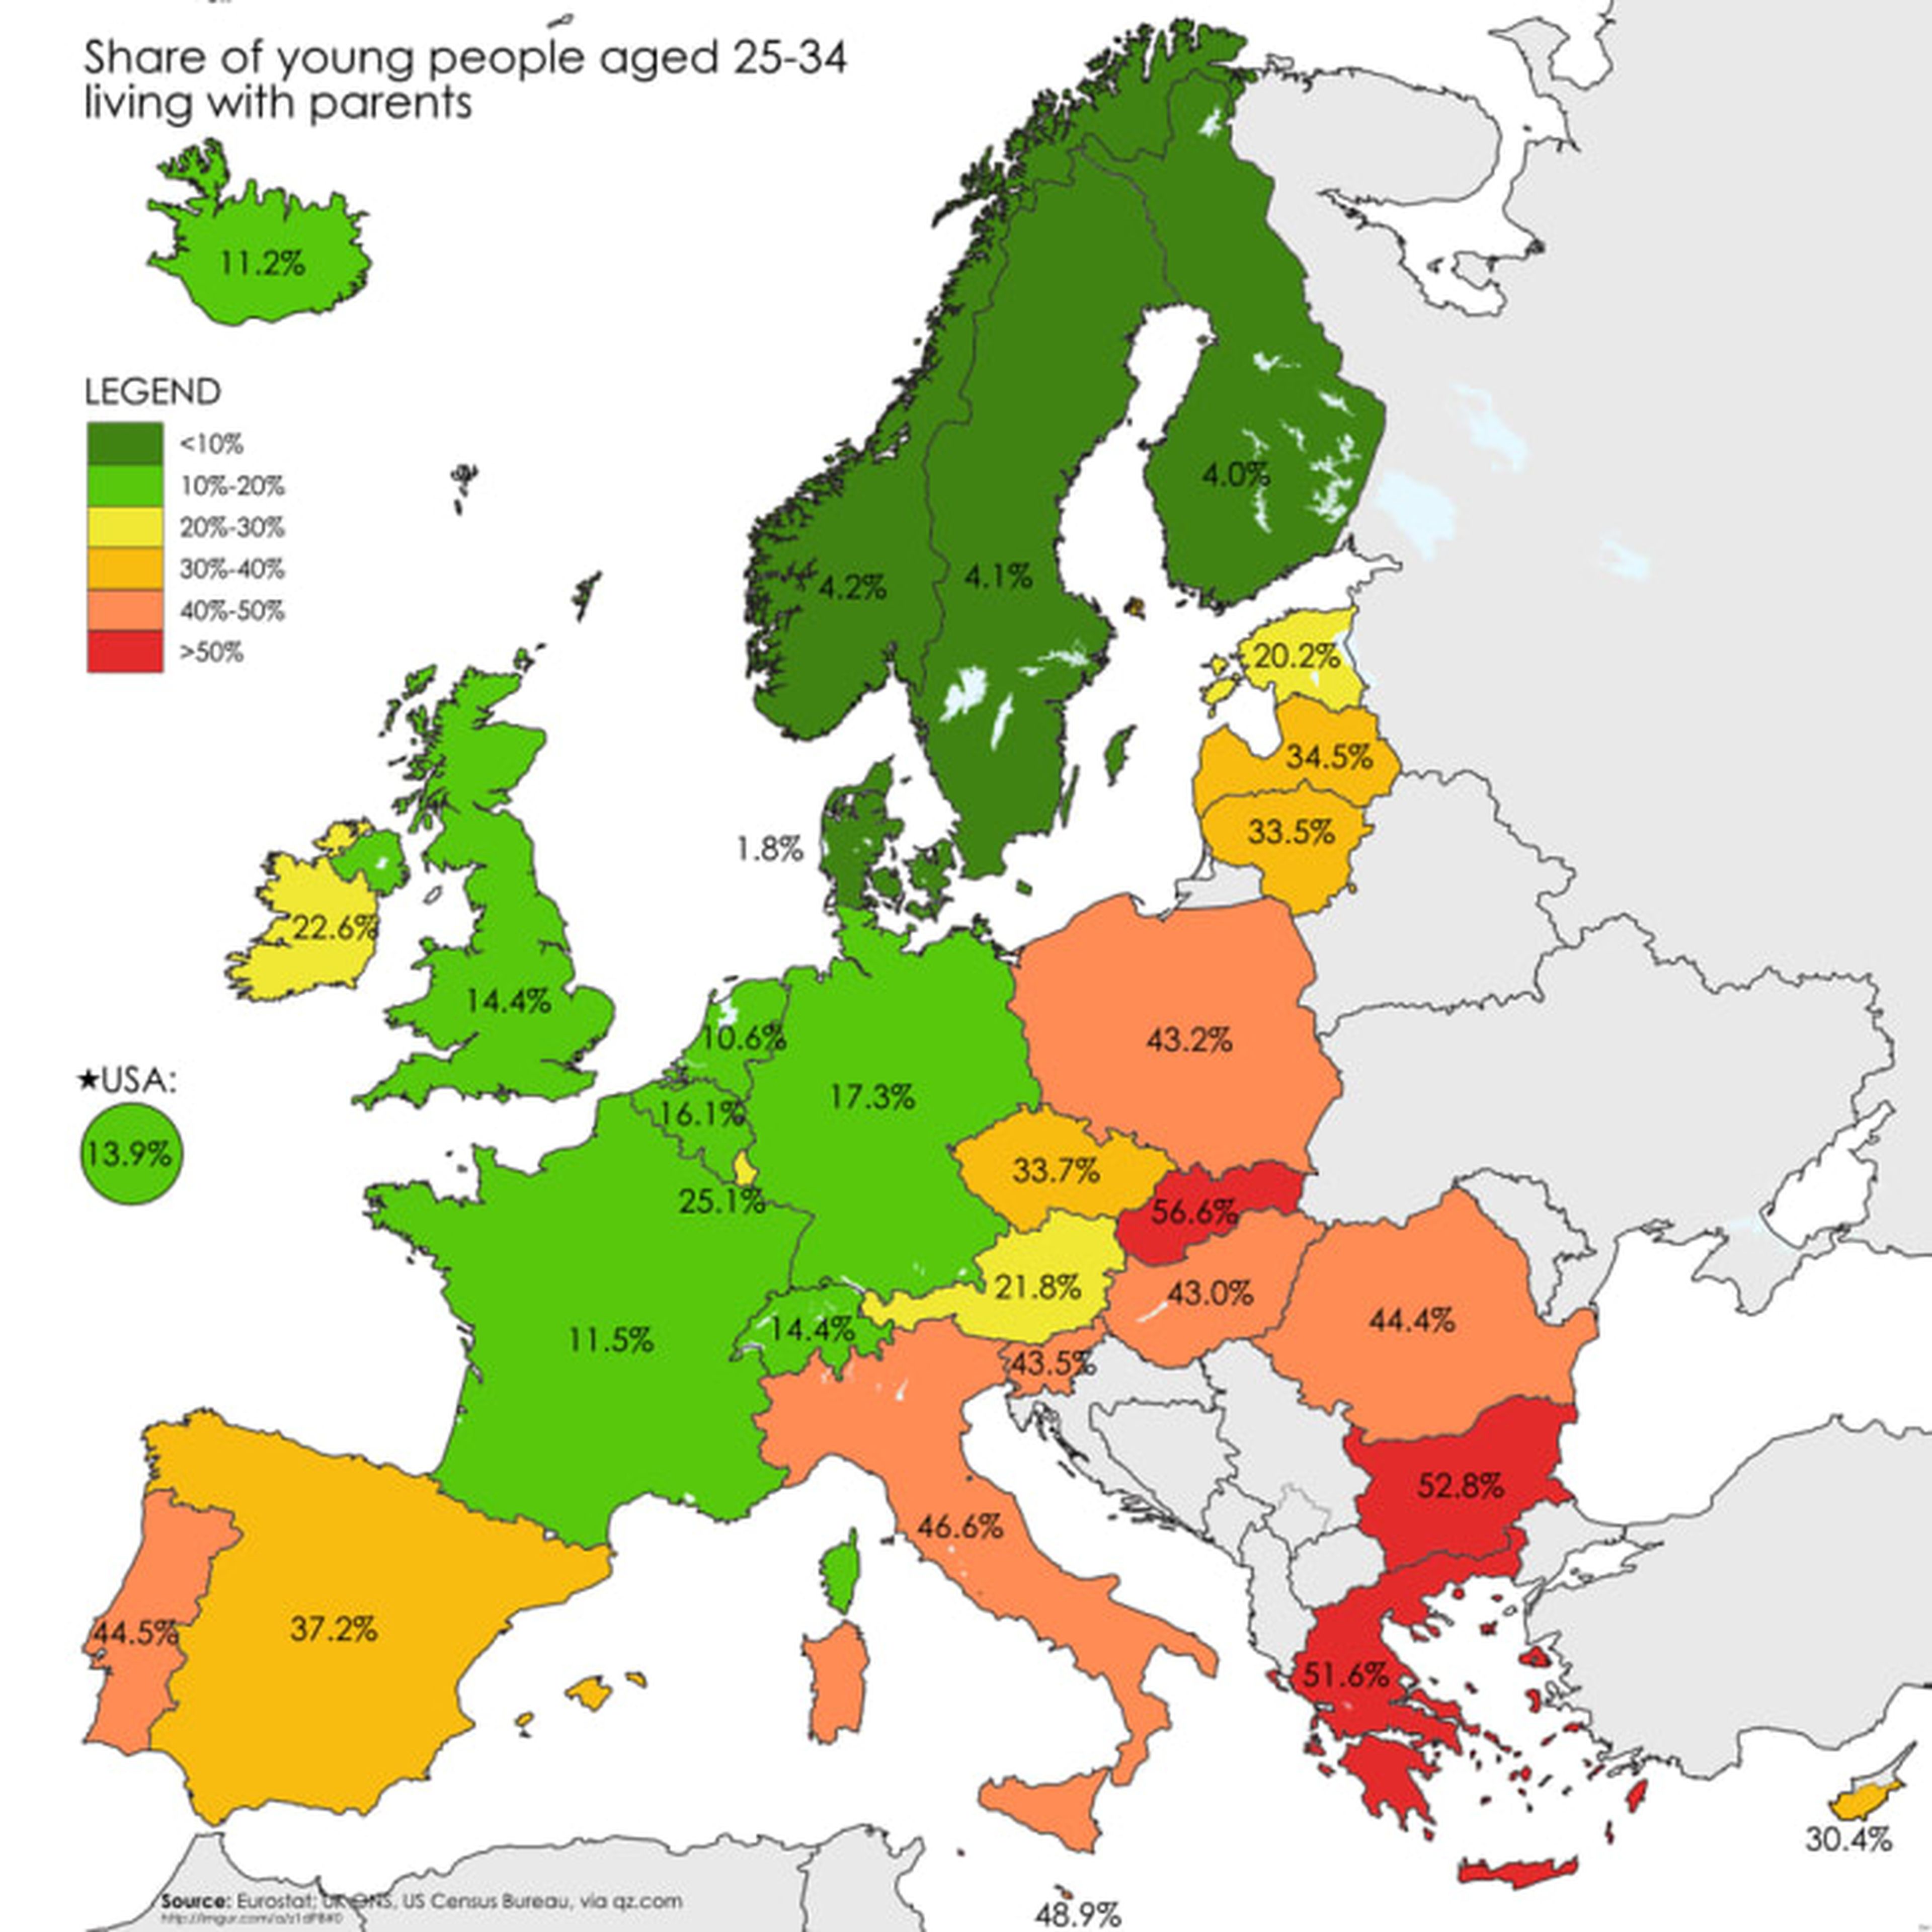 ¿En qué país vive más gente con sus padres?